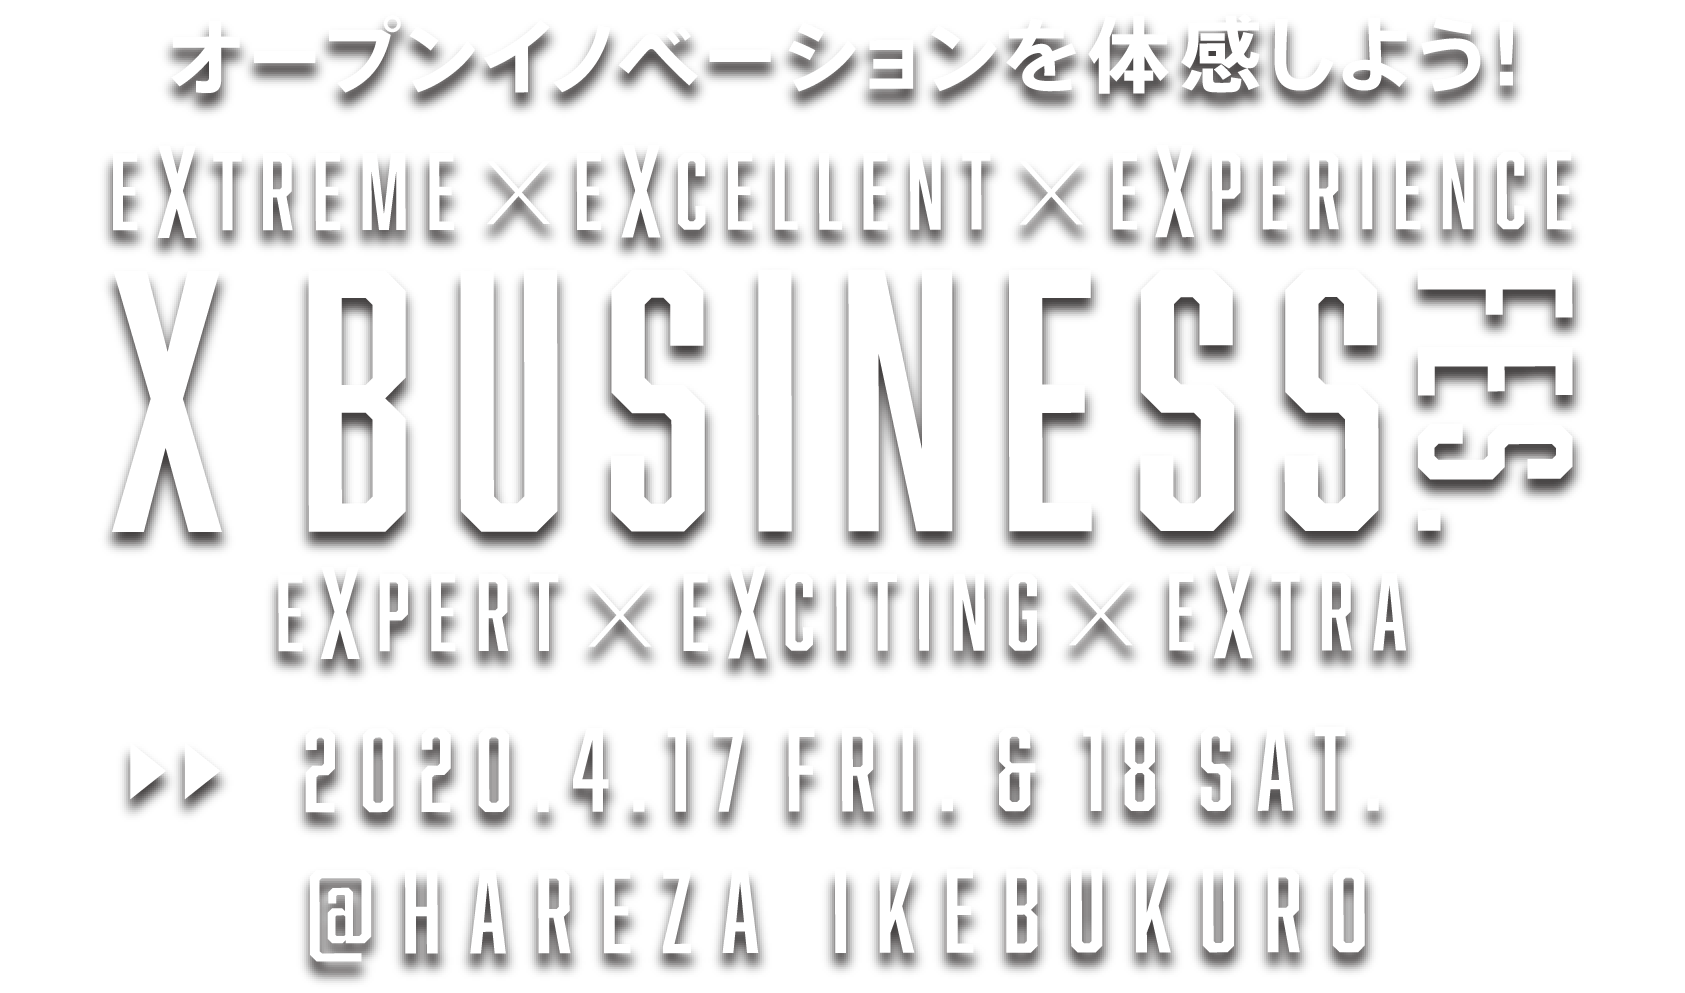 Xビジネスフェス 2020 in 豊島区